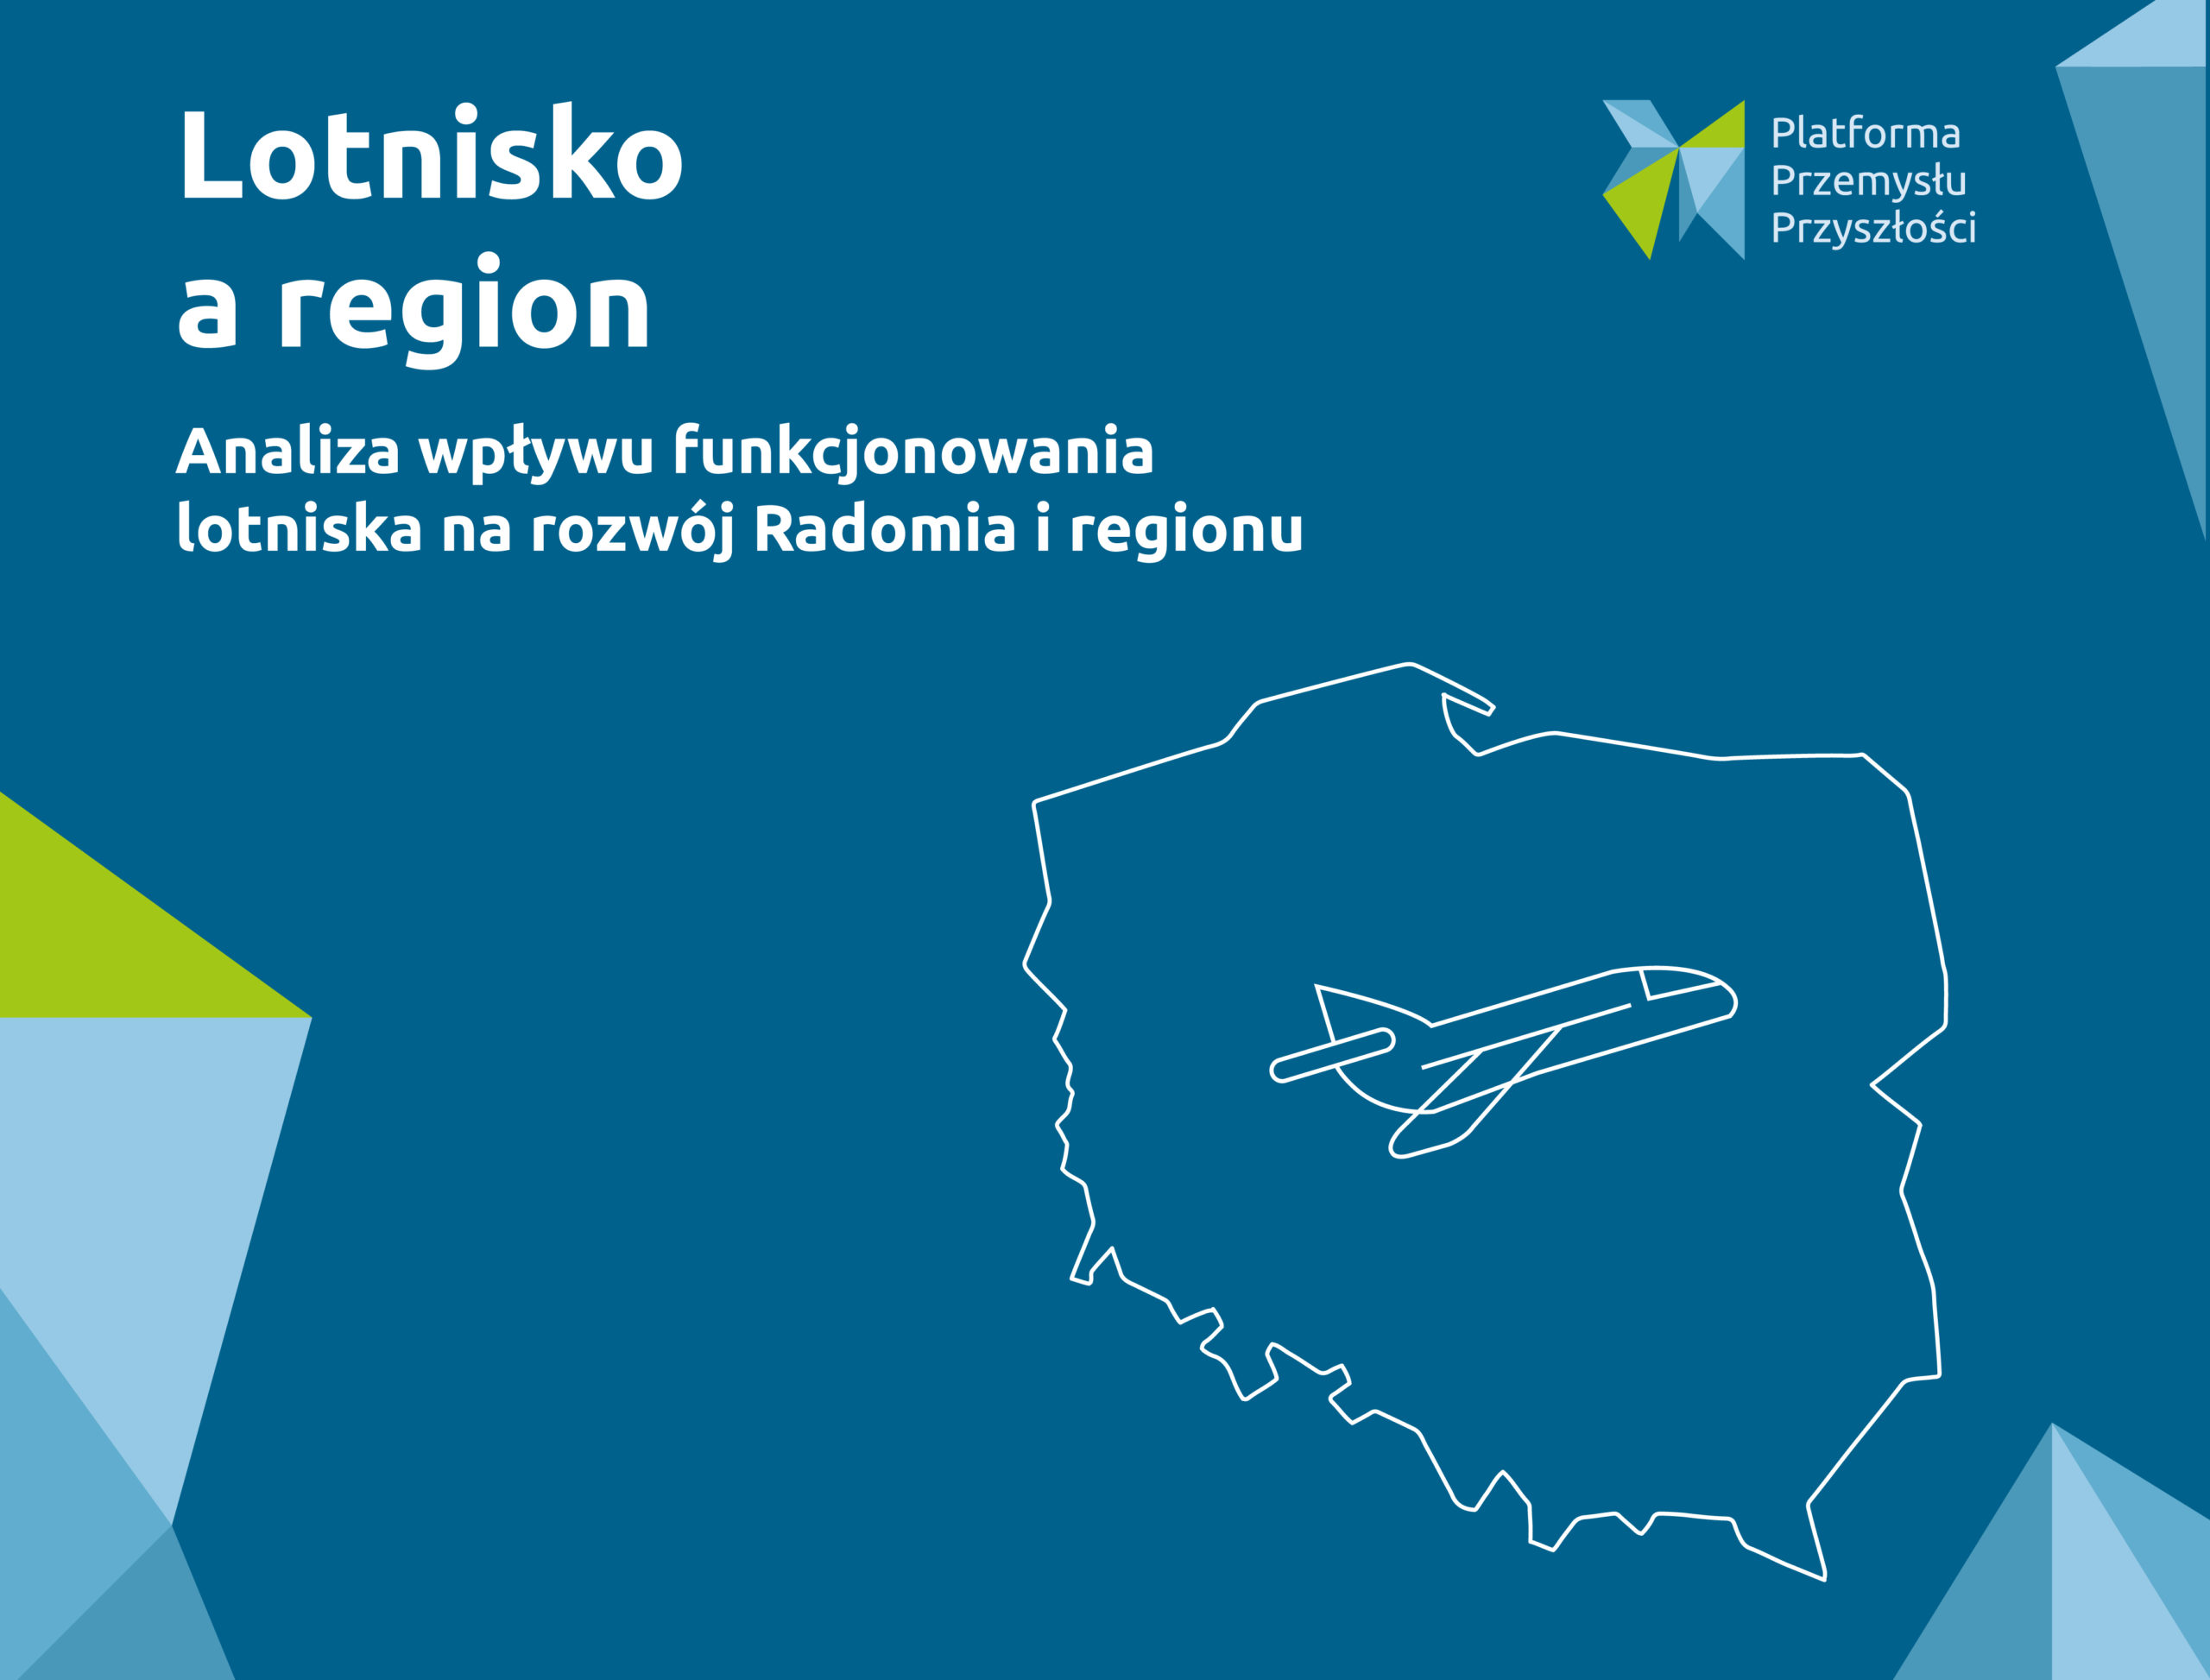 RAPORT: Lotnisko a region. Analiza wpływu funkcjonowania lotniska na rozwój Radomia i regionu